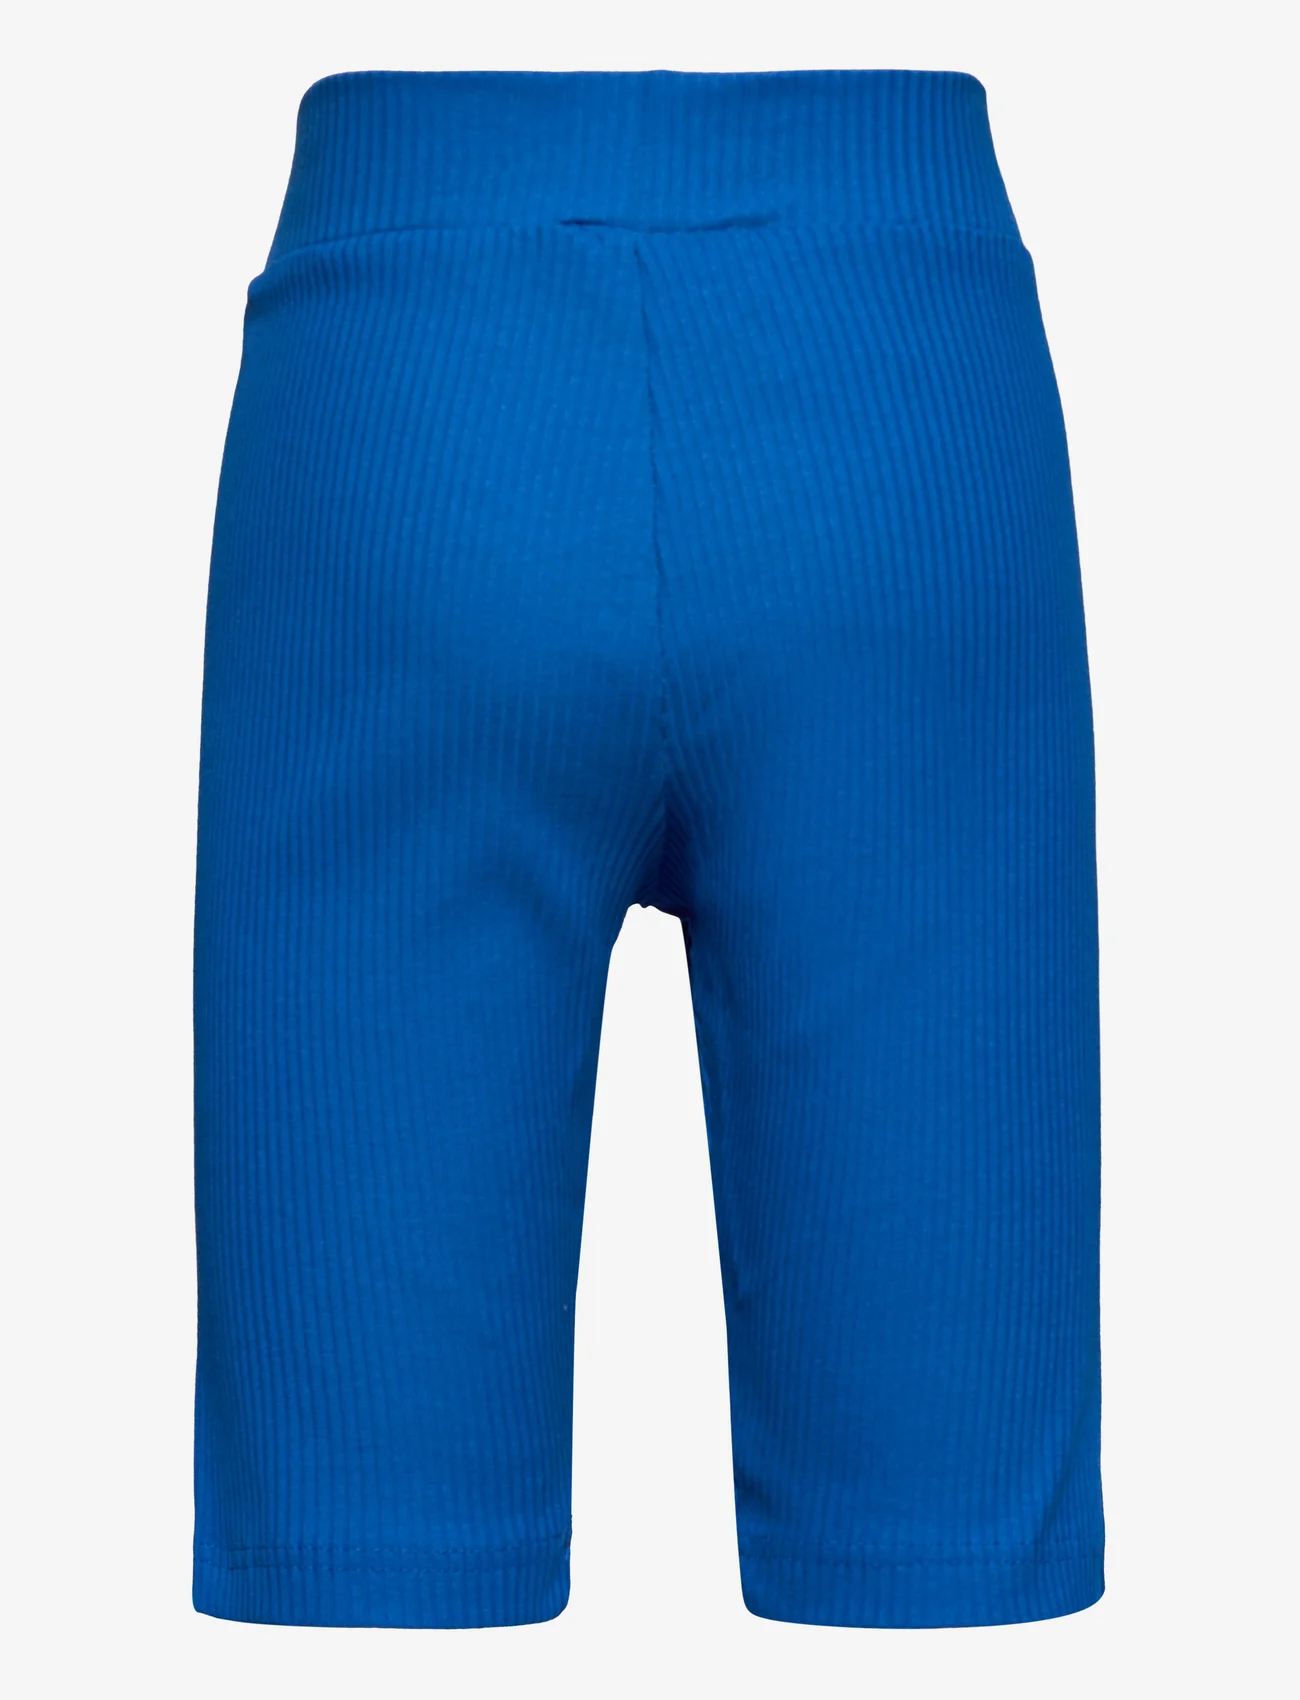 FILA - TAUTENBURG short leggings - pyöräilyshortsit - lapis blue - 1